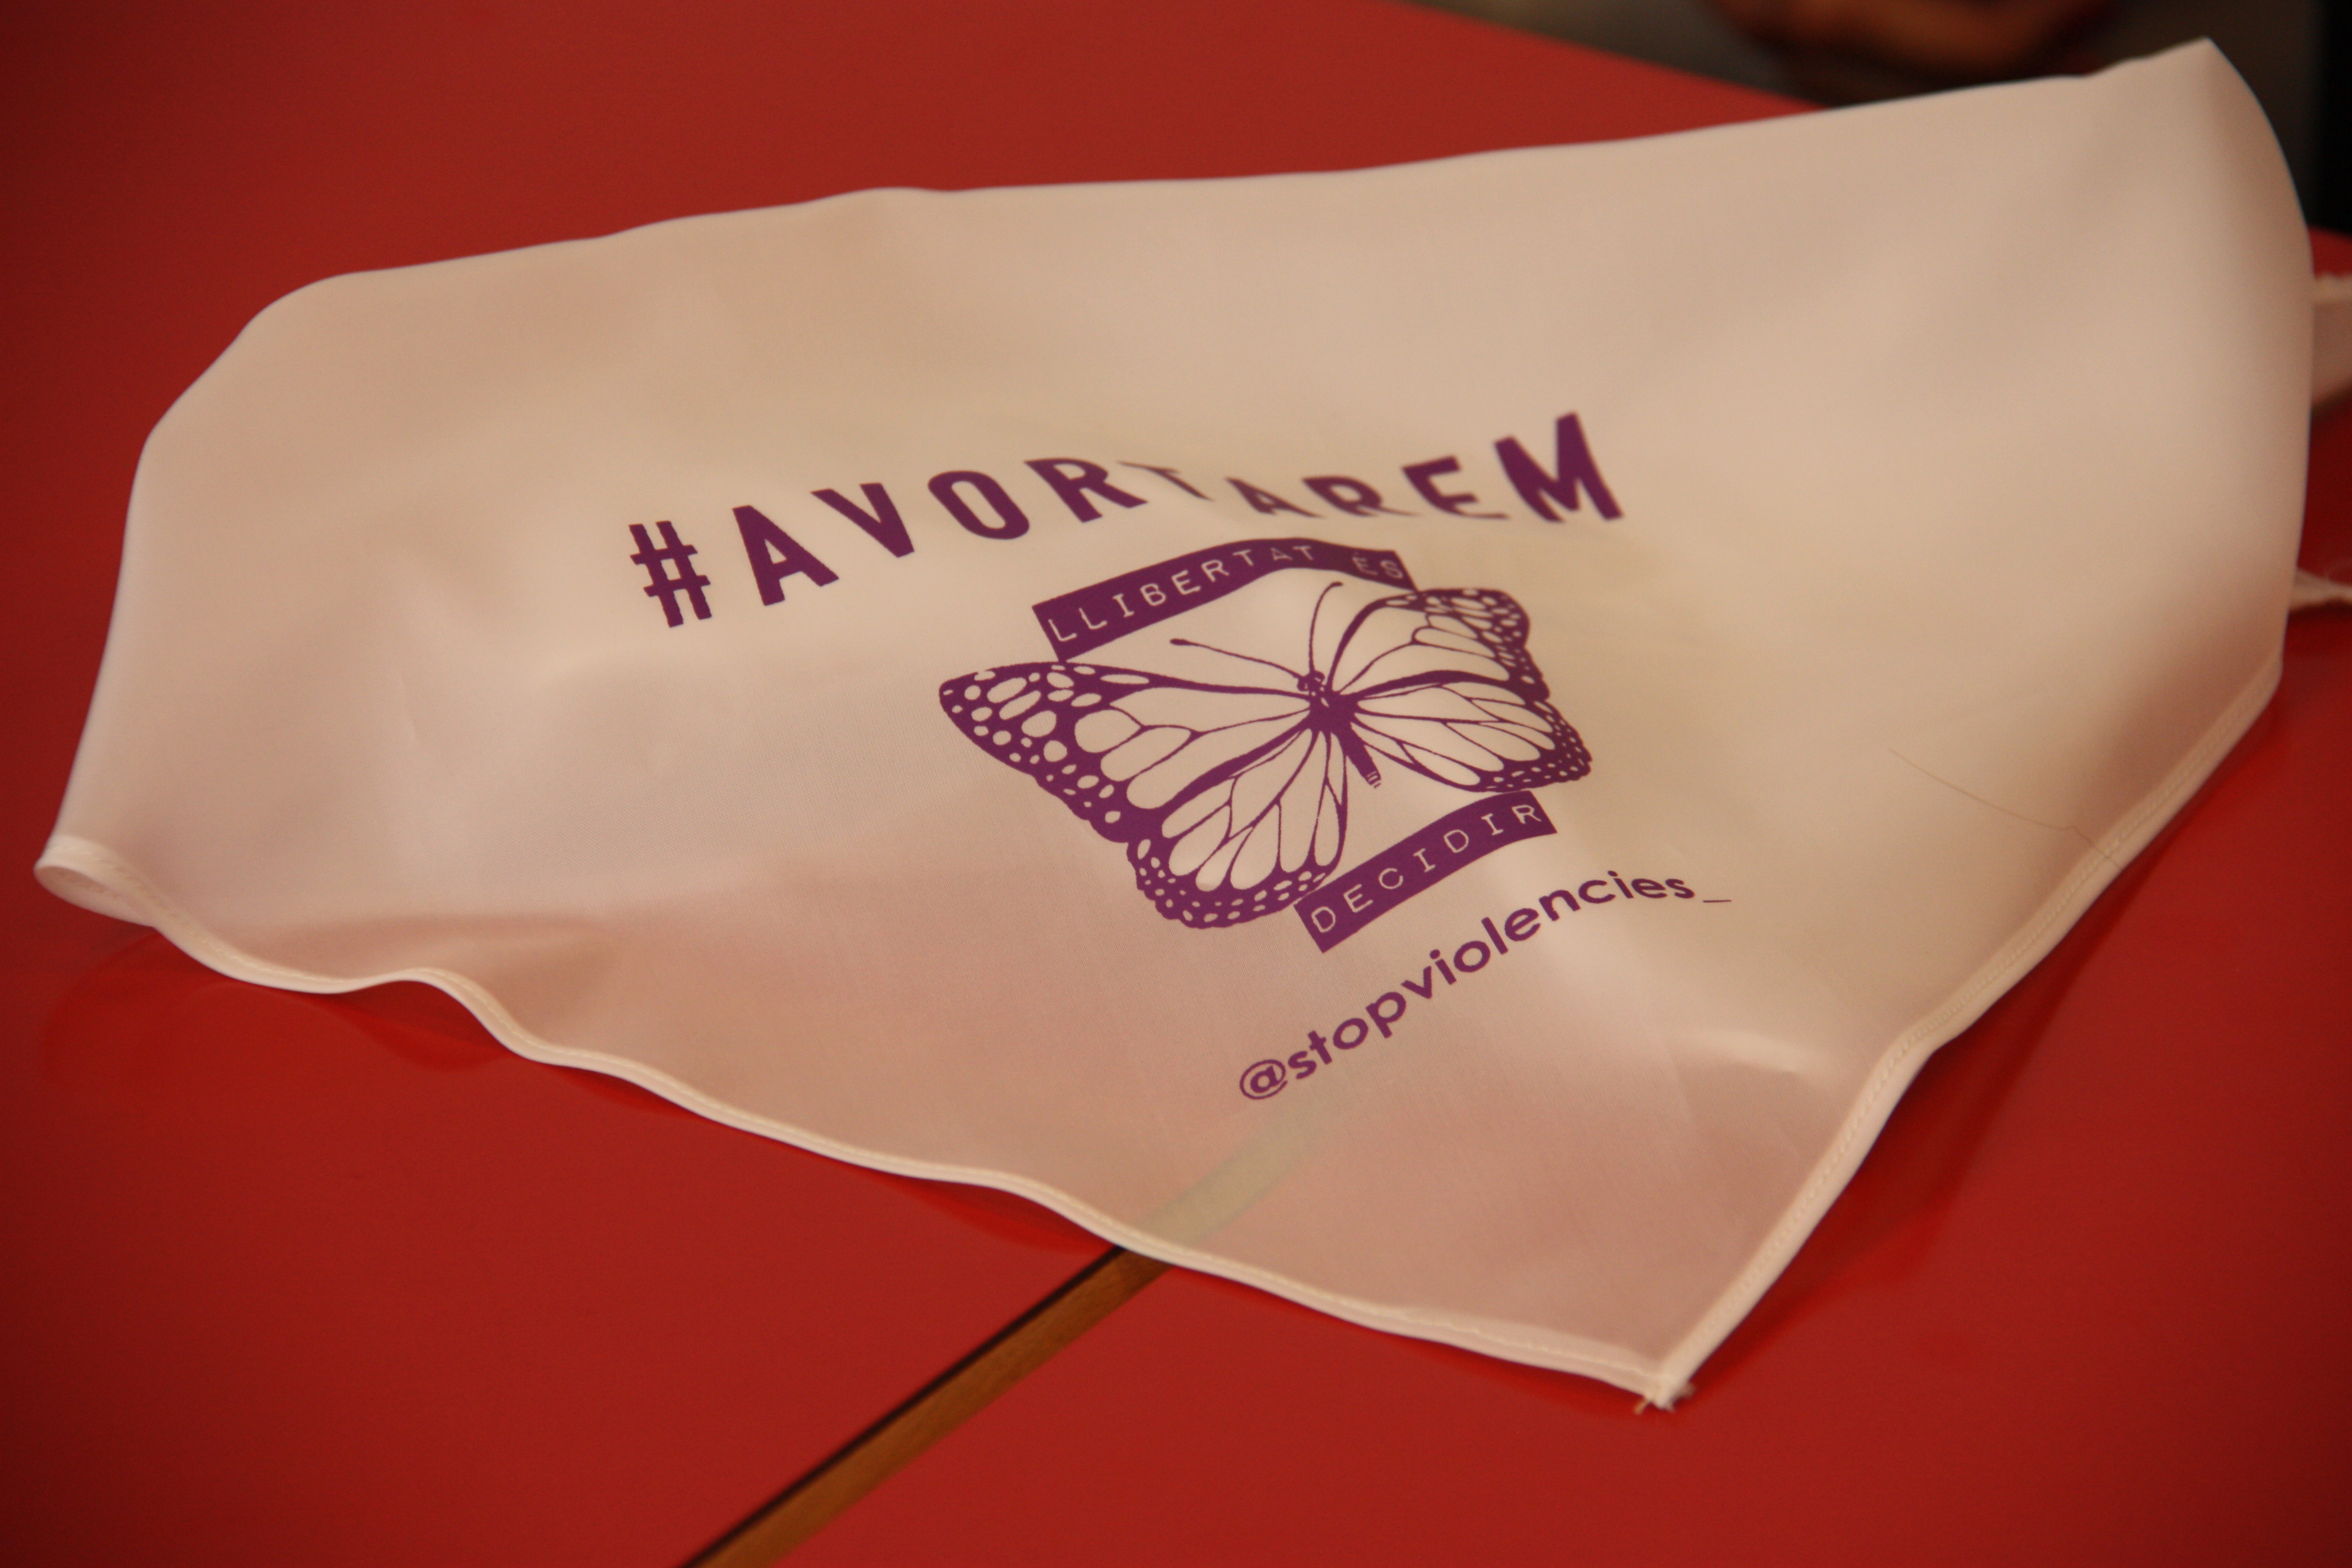 Stop Violències handkerchief with 'Avortarem' (We will abort) slogan demanding the legalization of abortion in Andorra (by Albert Lijarcio)